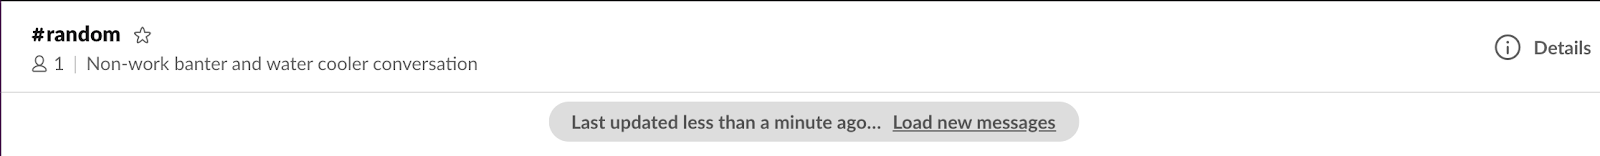 ‘마지막으로 업데이트한 시간 1분 이내... 새 메시지 로드’라는 내용의 메시지가 있는 Slack 채널